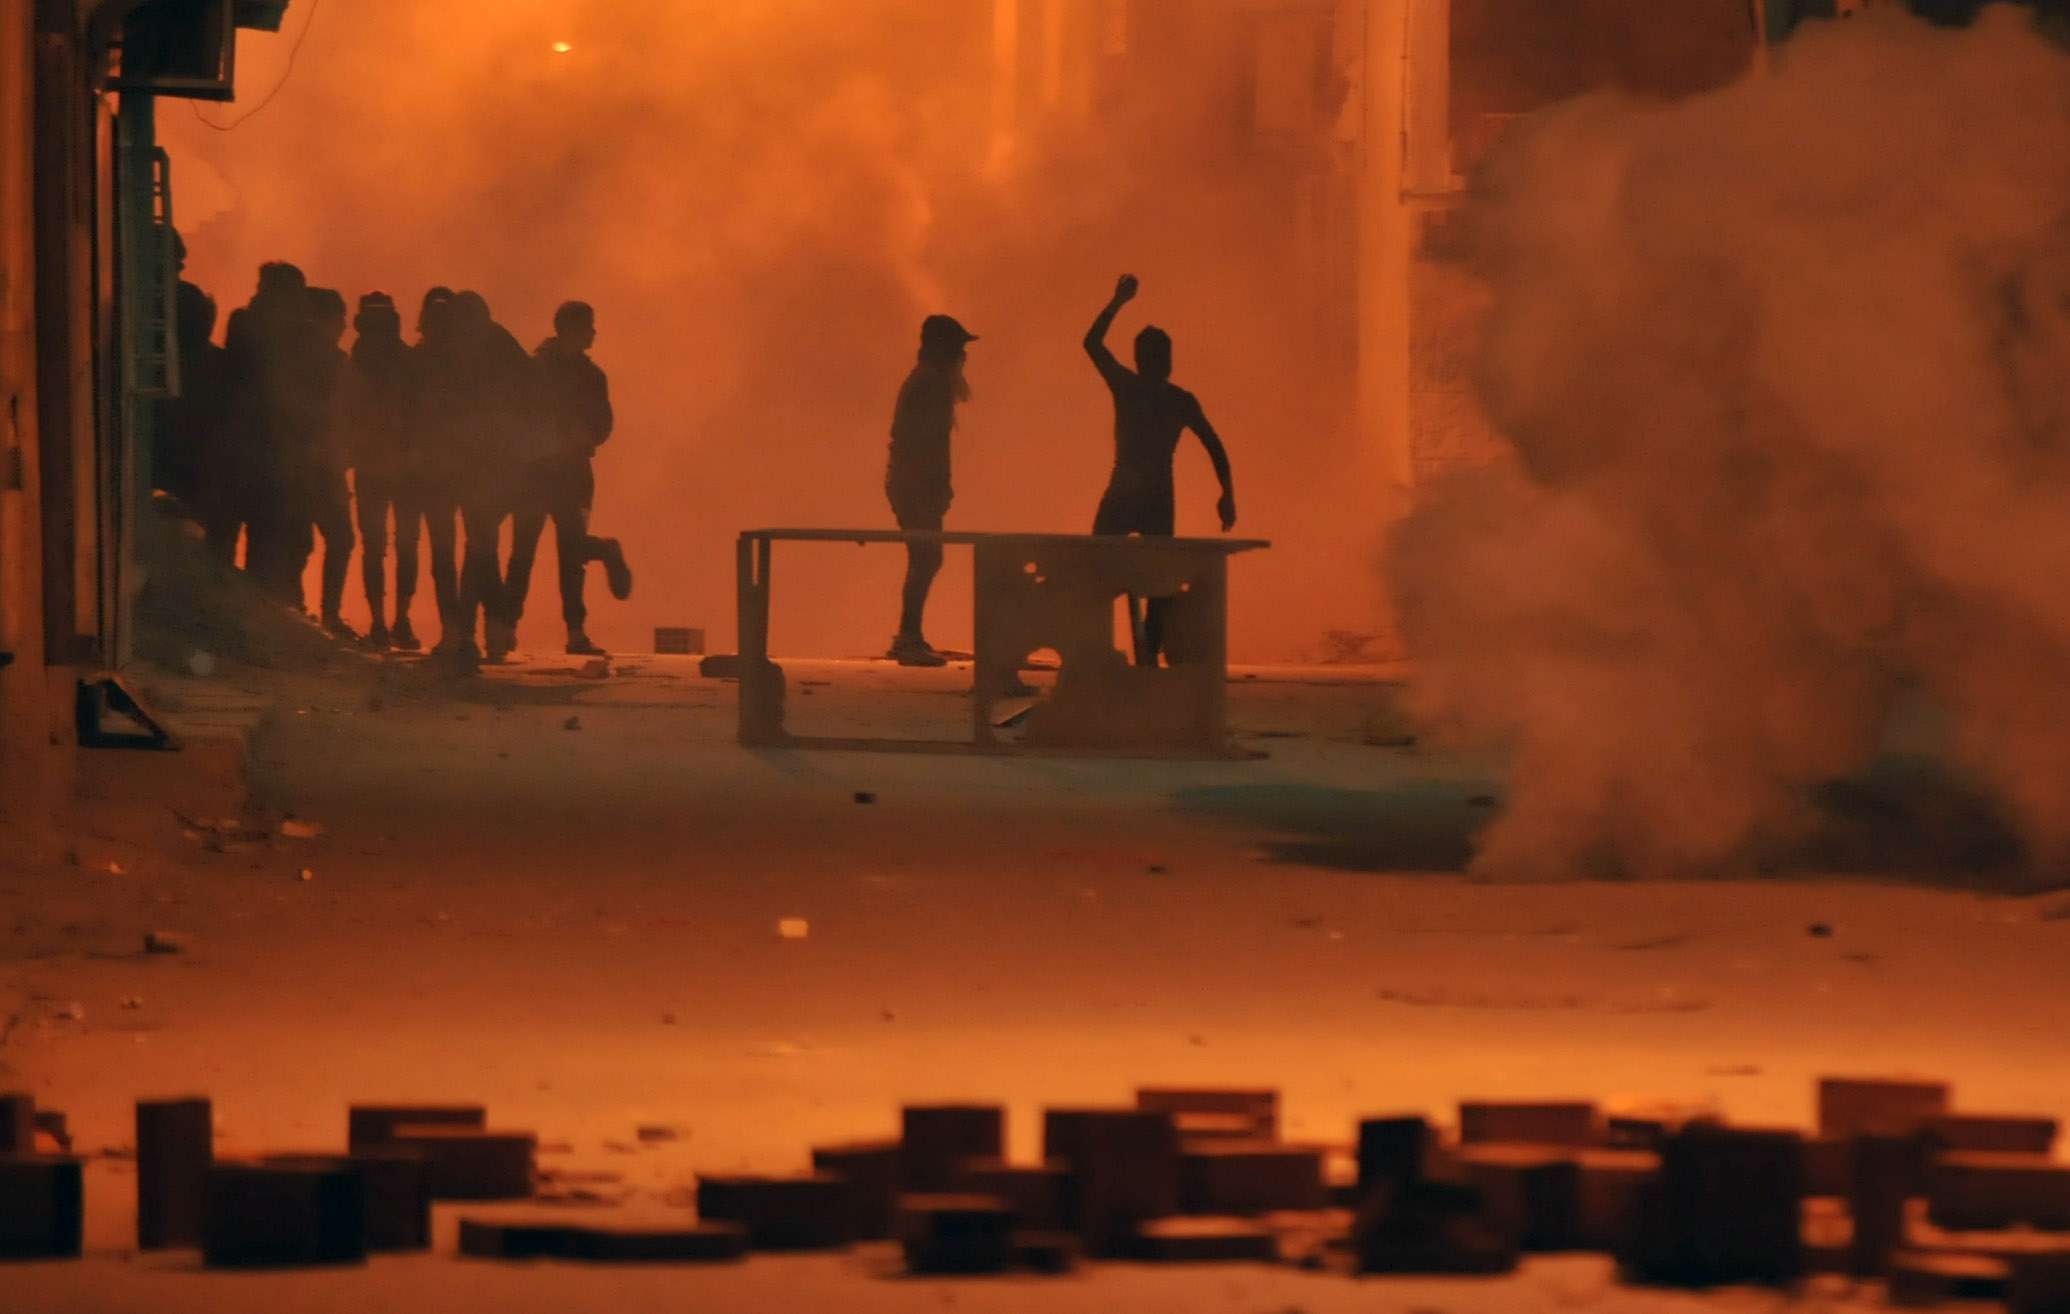 توسع الاحتجاجات ينذر بشتاء ساخن في تونس